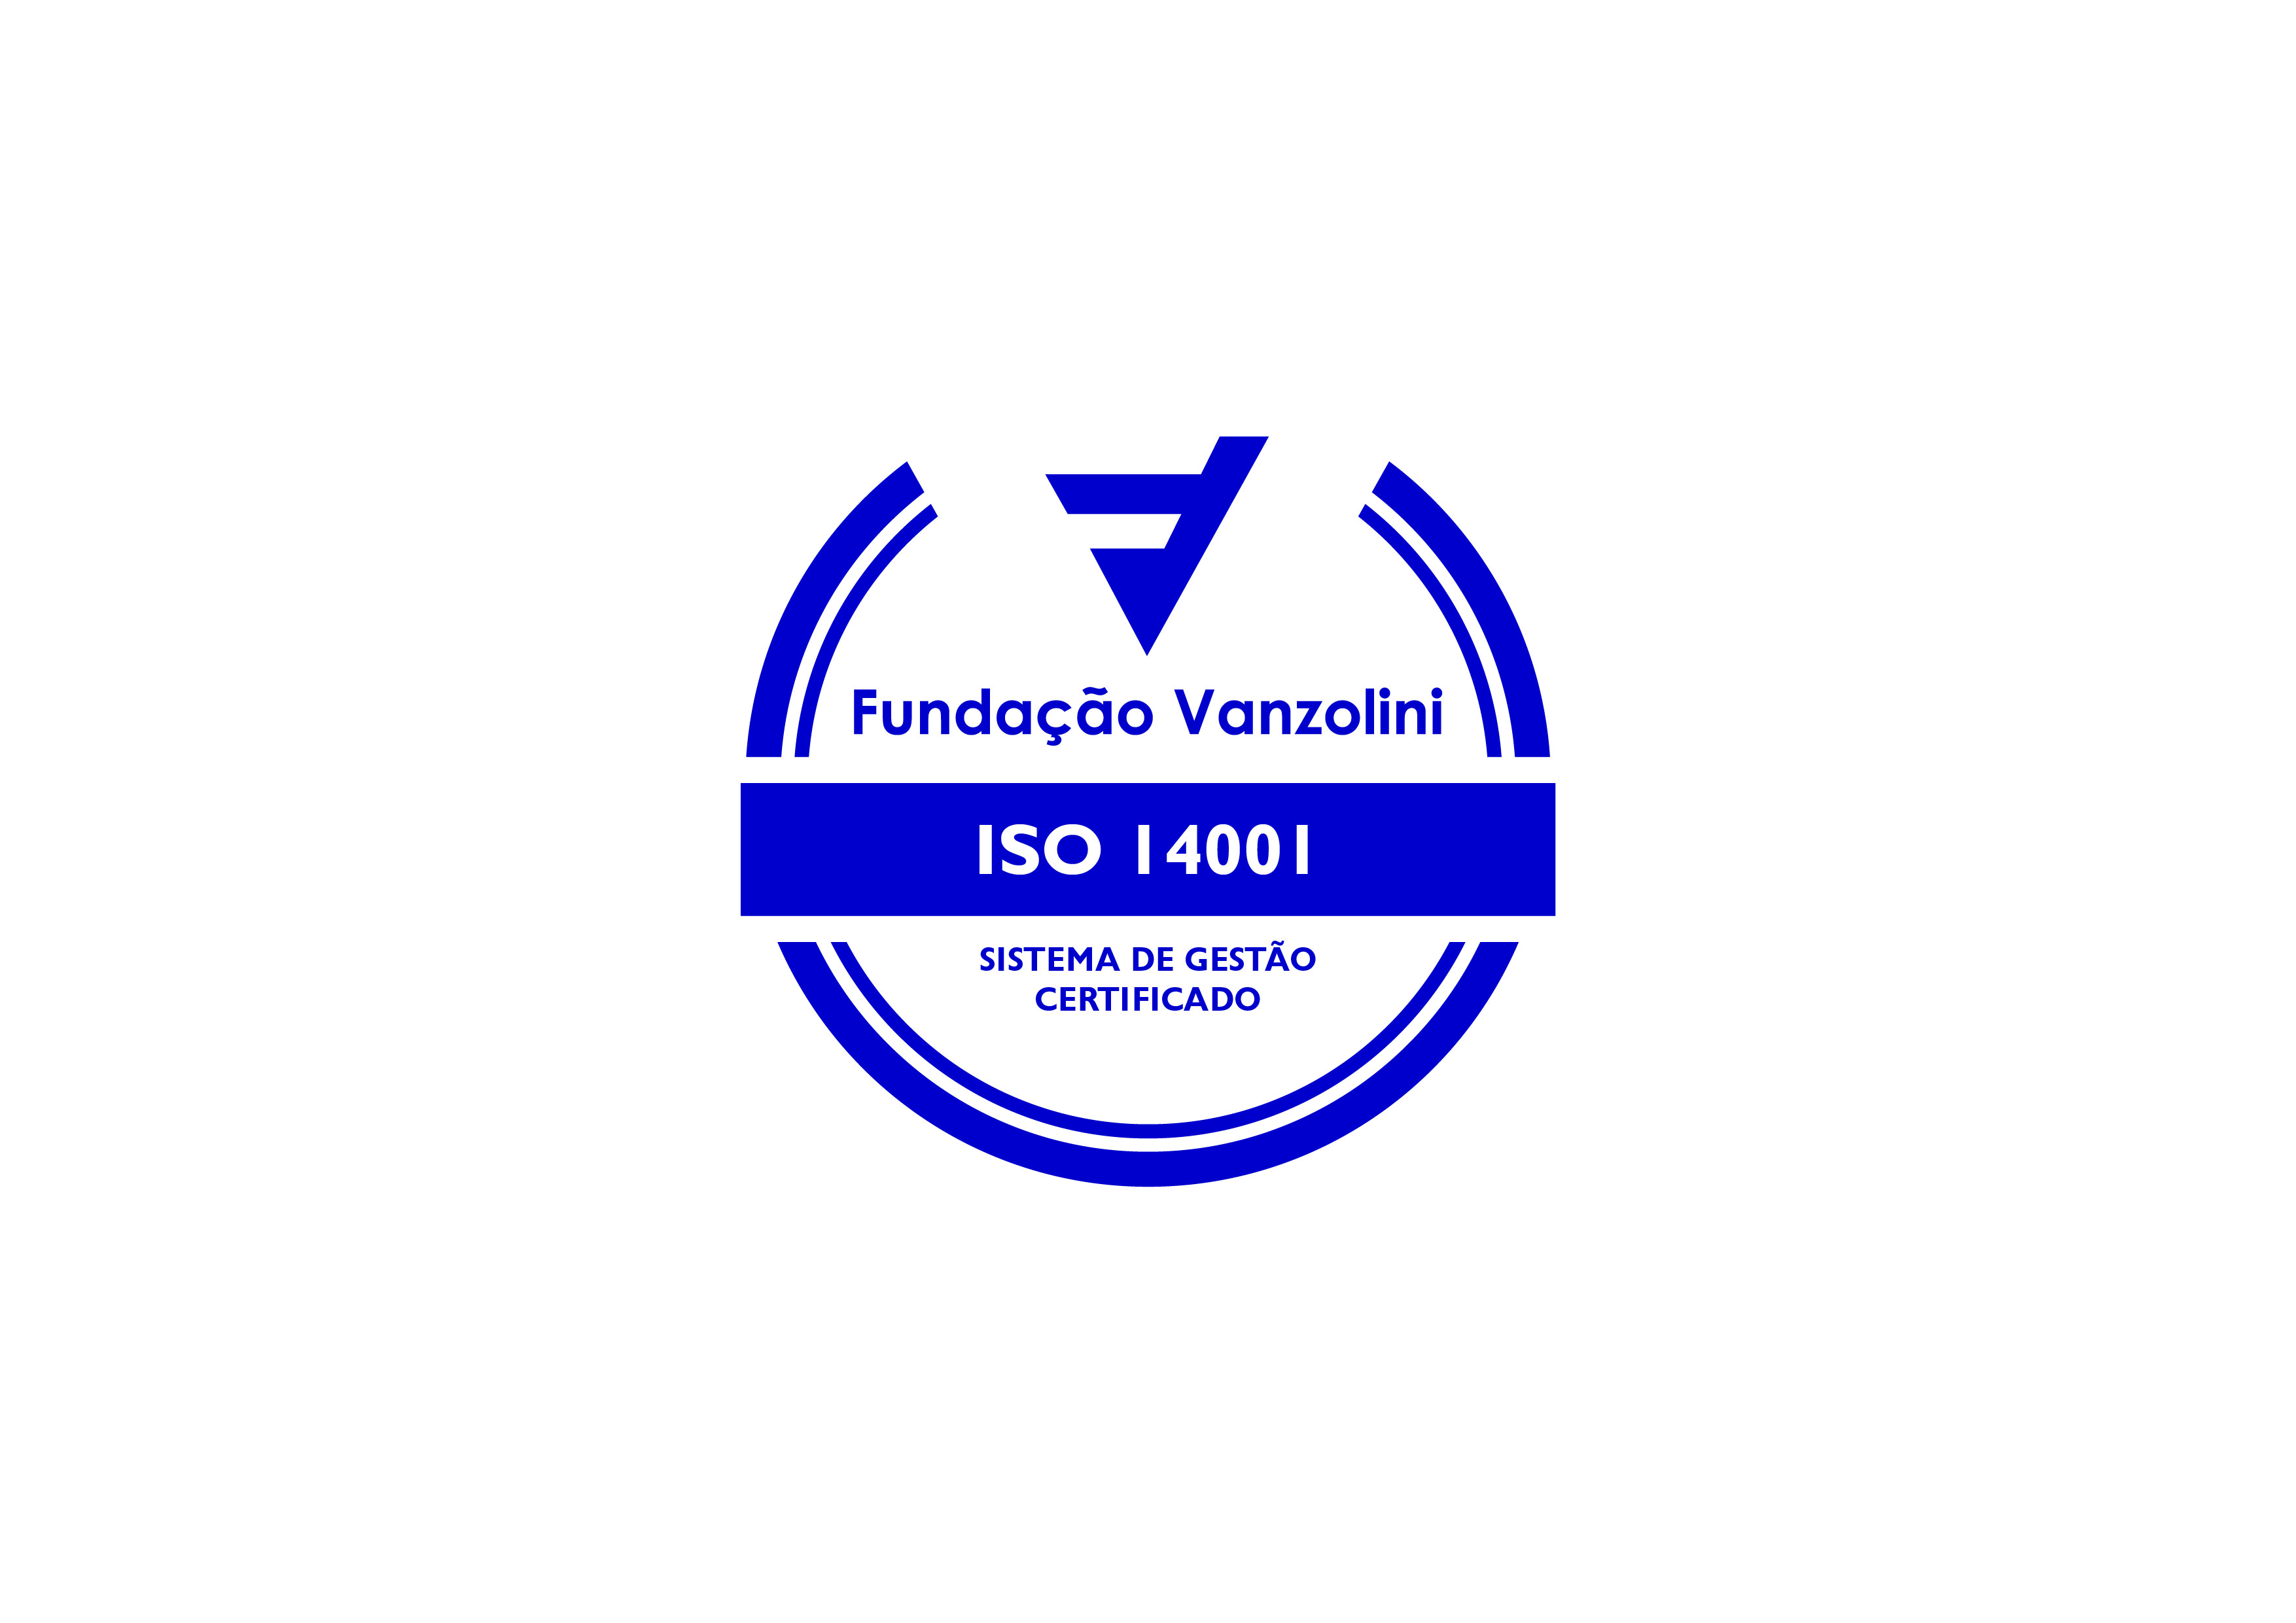 Fundação Vanzolini NBR ISO 14001:2015 Environmental Management System, certificate SGA-1868